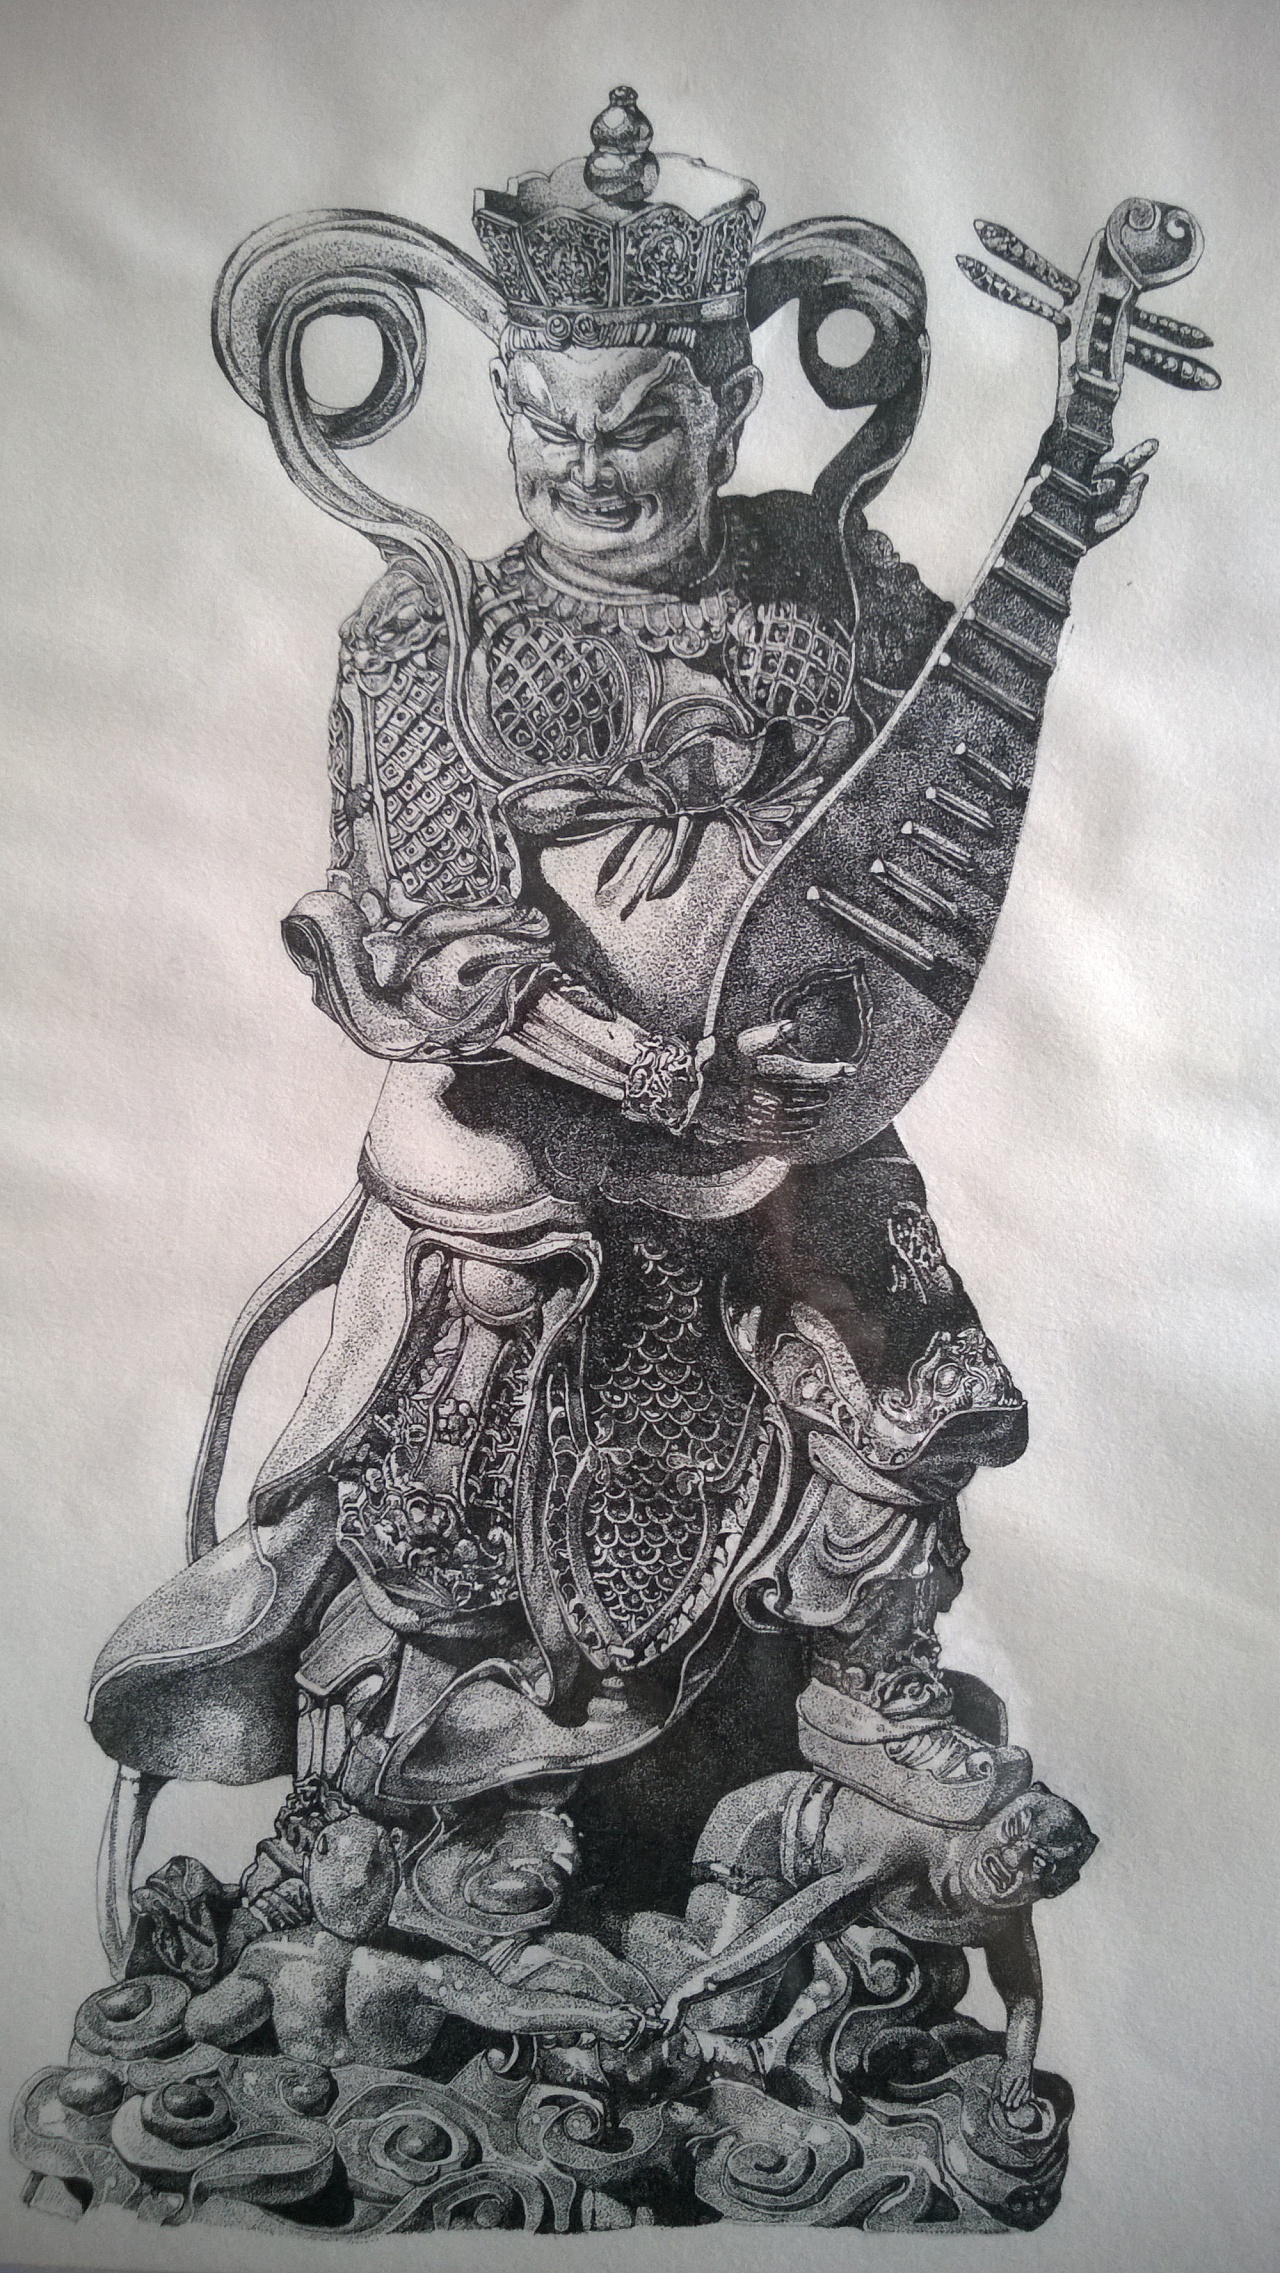 手绘作品"东方持国天王"《佛教四大天王》系列之一